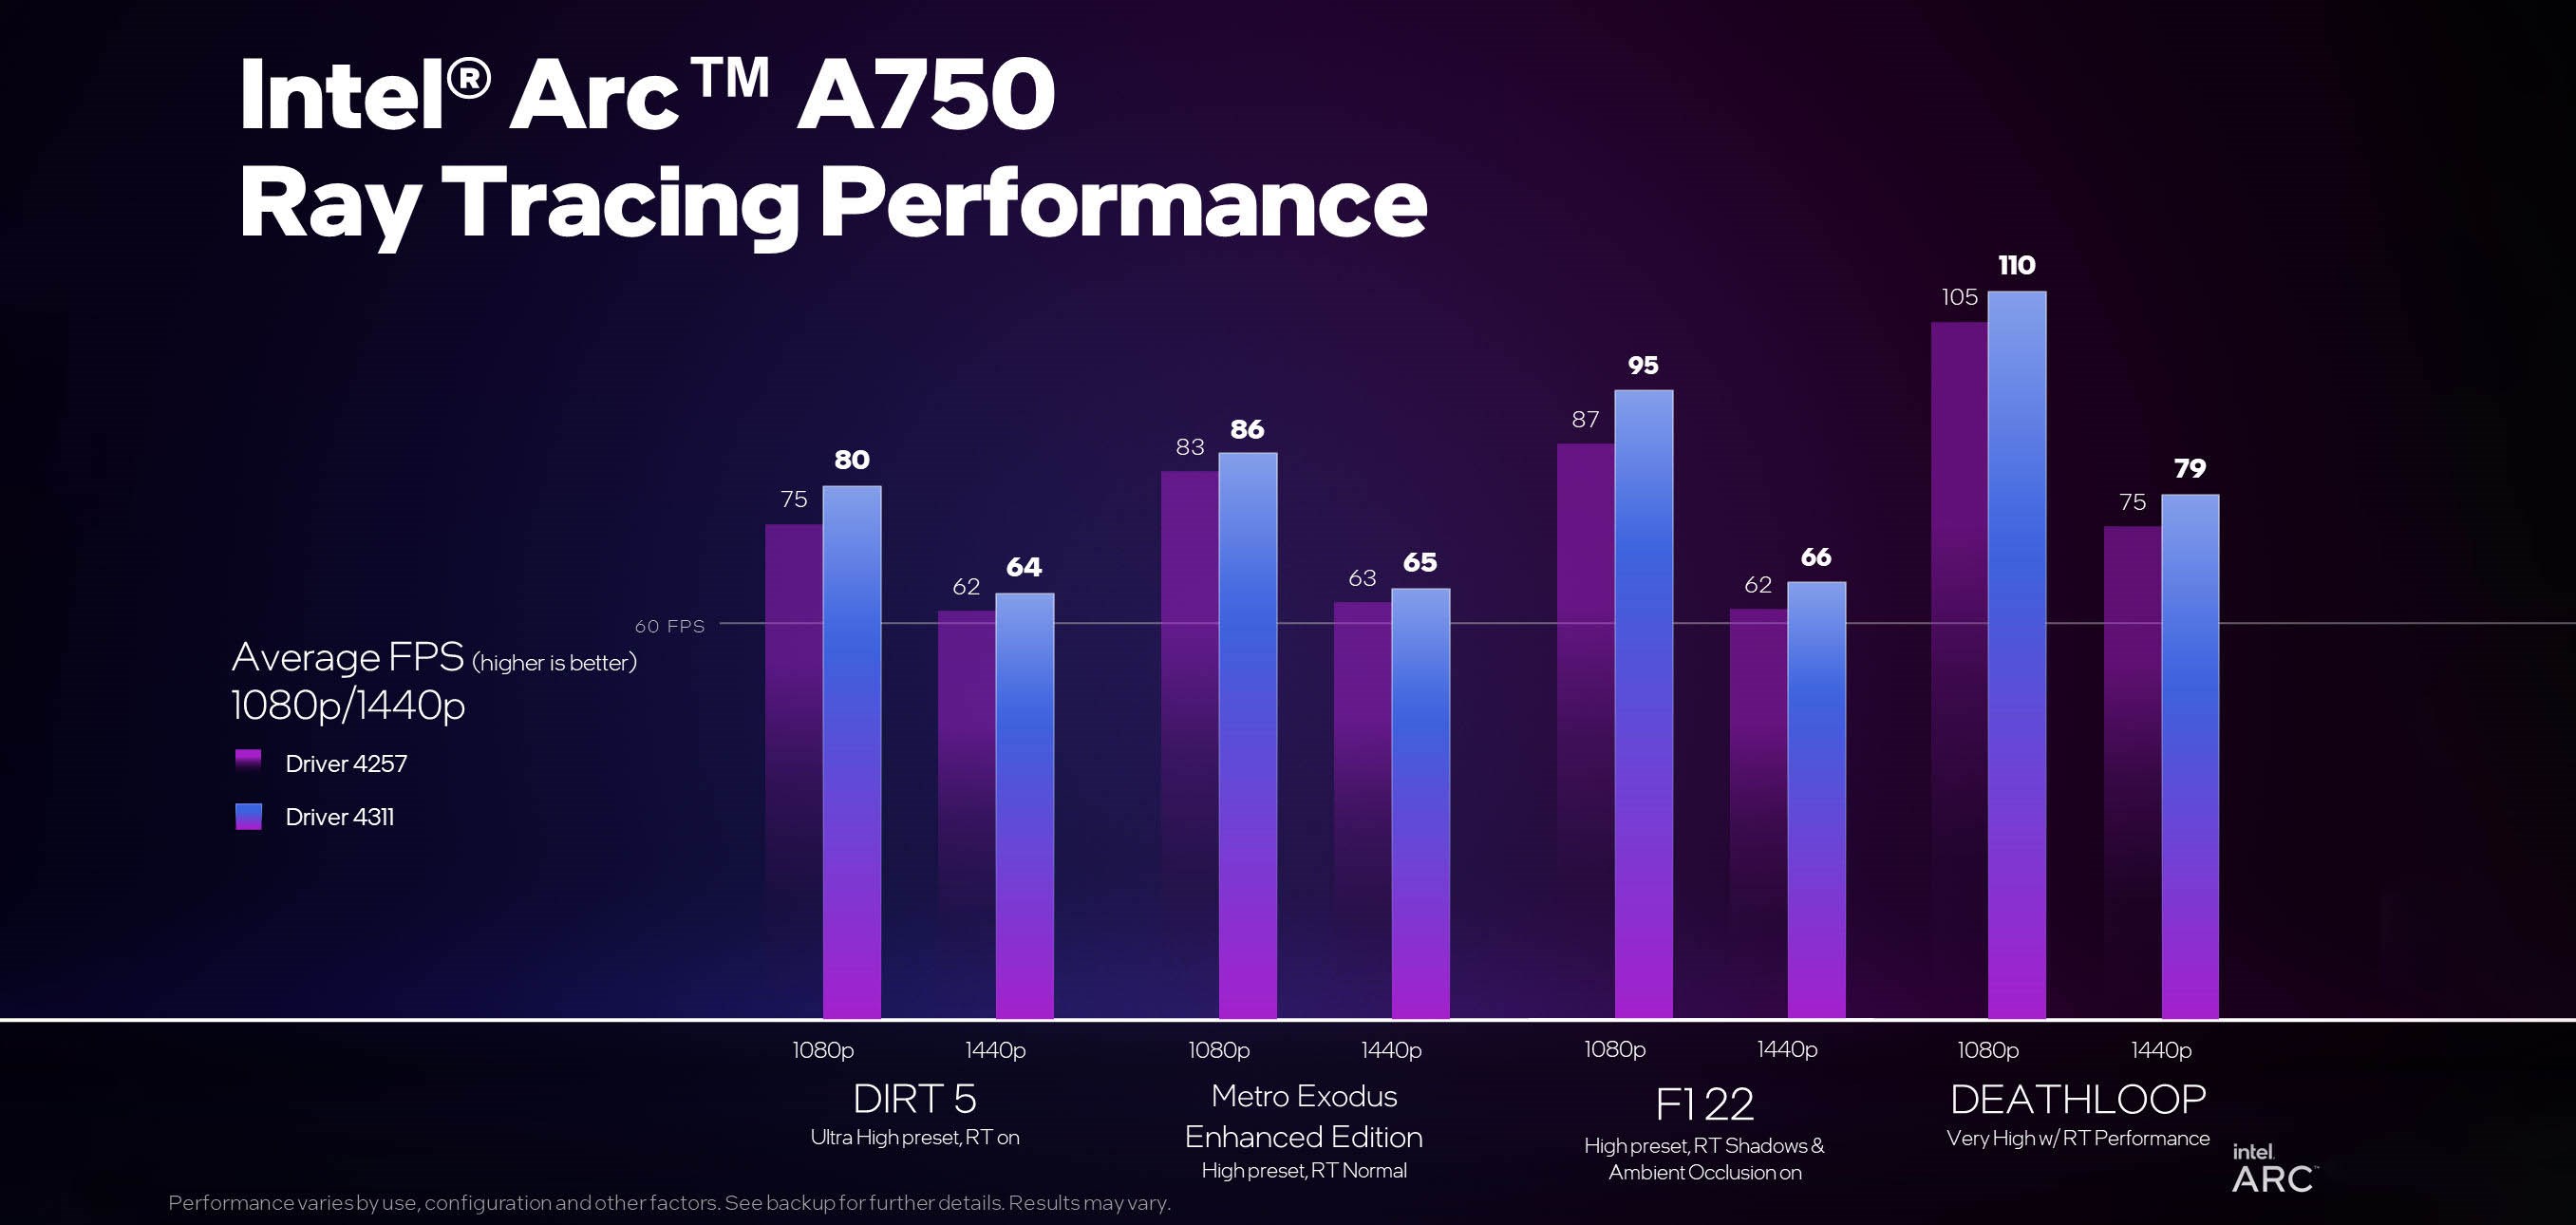 Yeni Intel Arc sürücüleri paylaşıldı: Performans artıyor